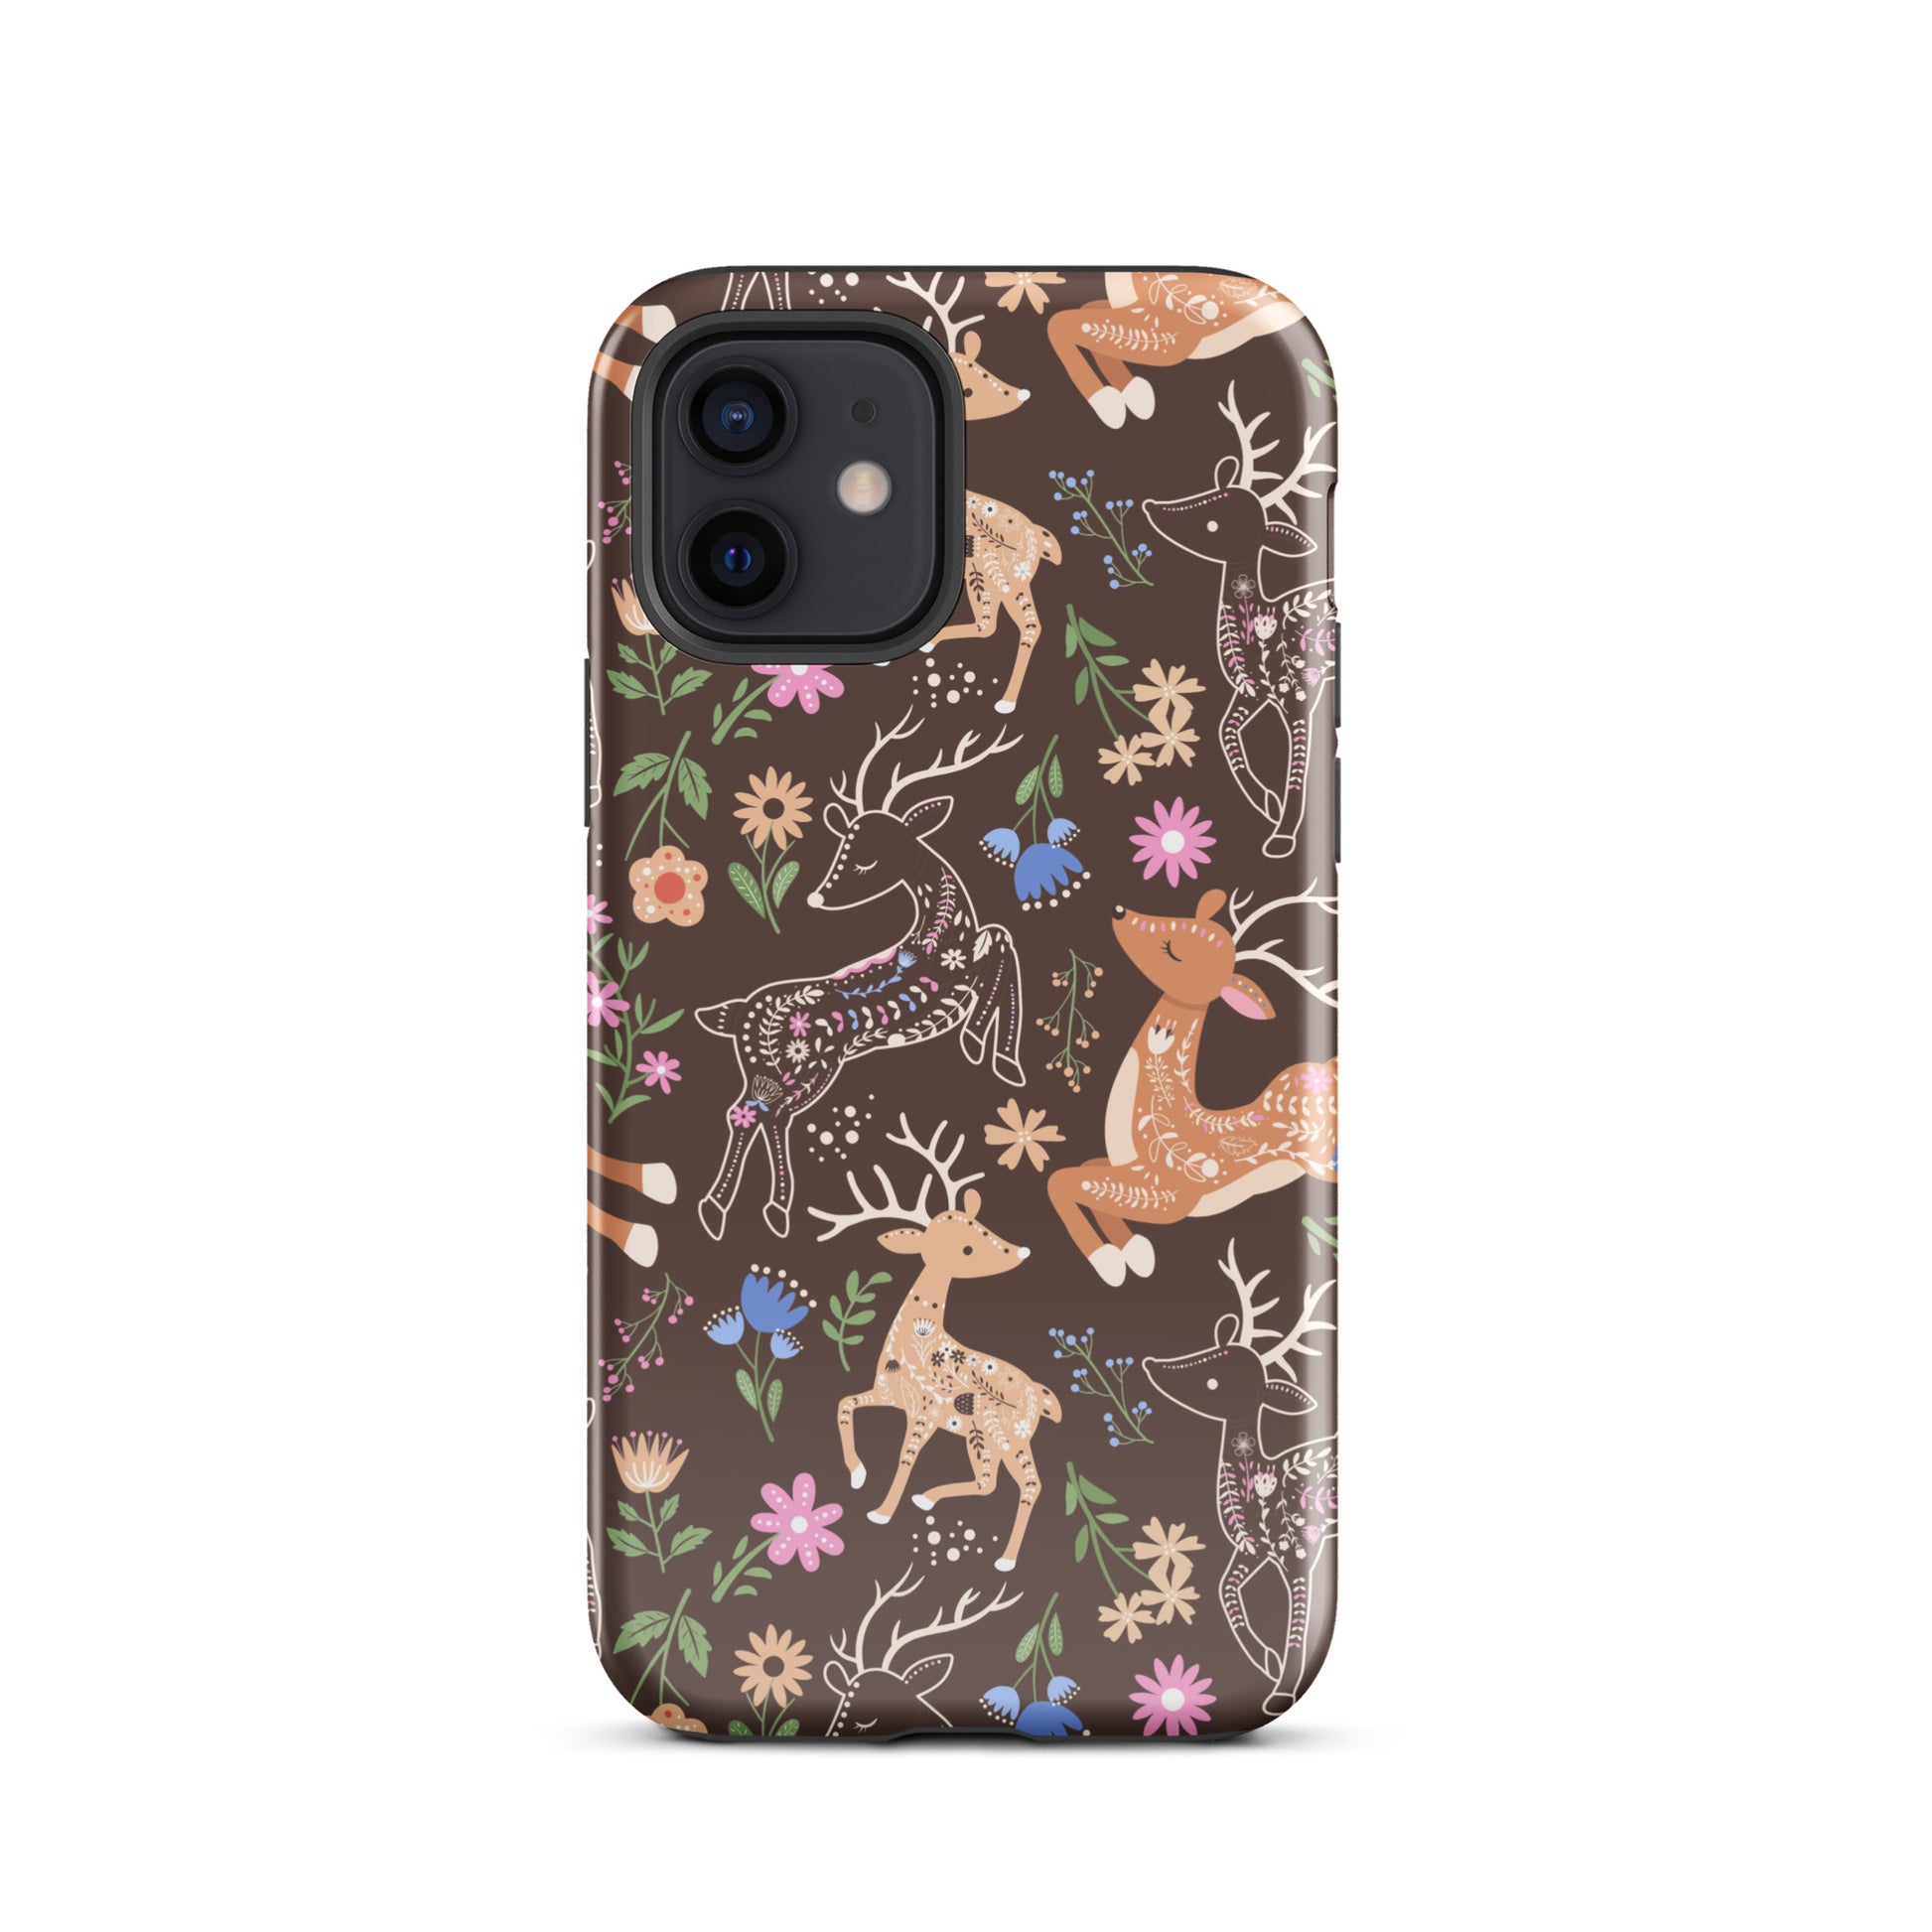 Deer Meadow iPhone Case iPhone 12 Glossy